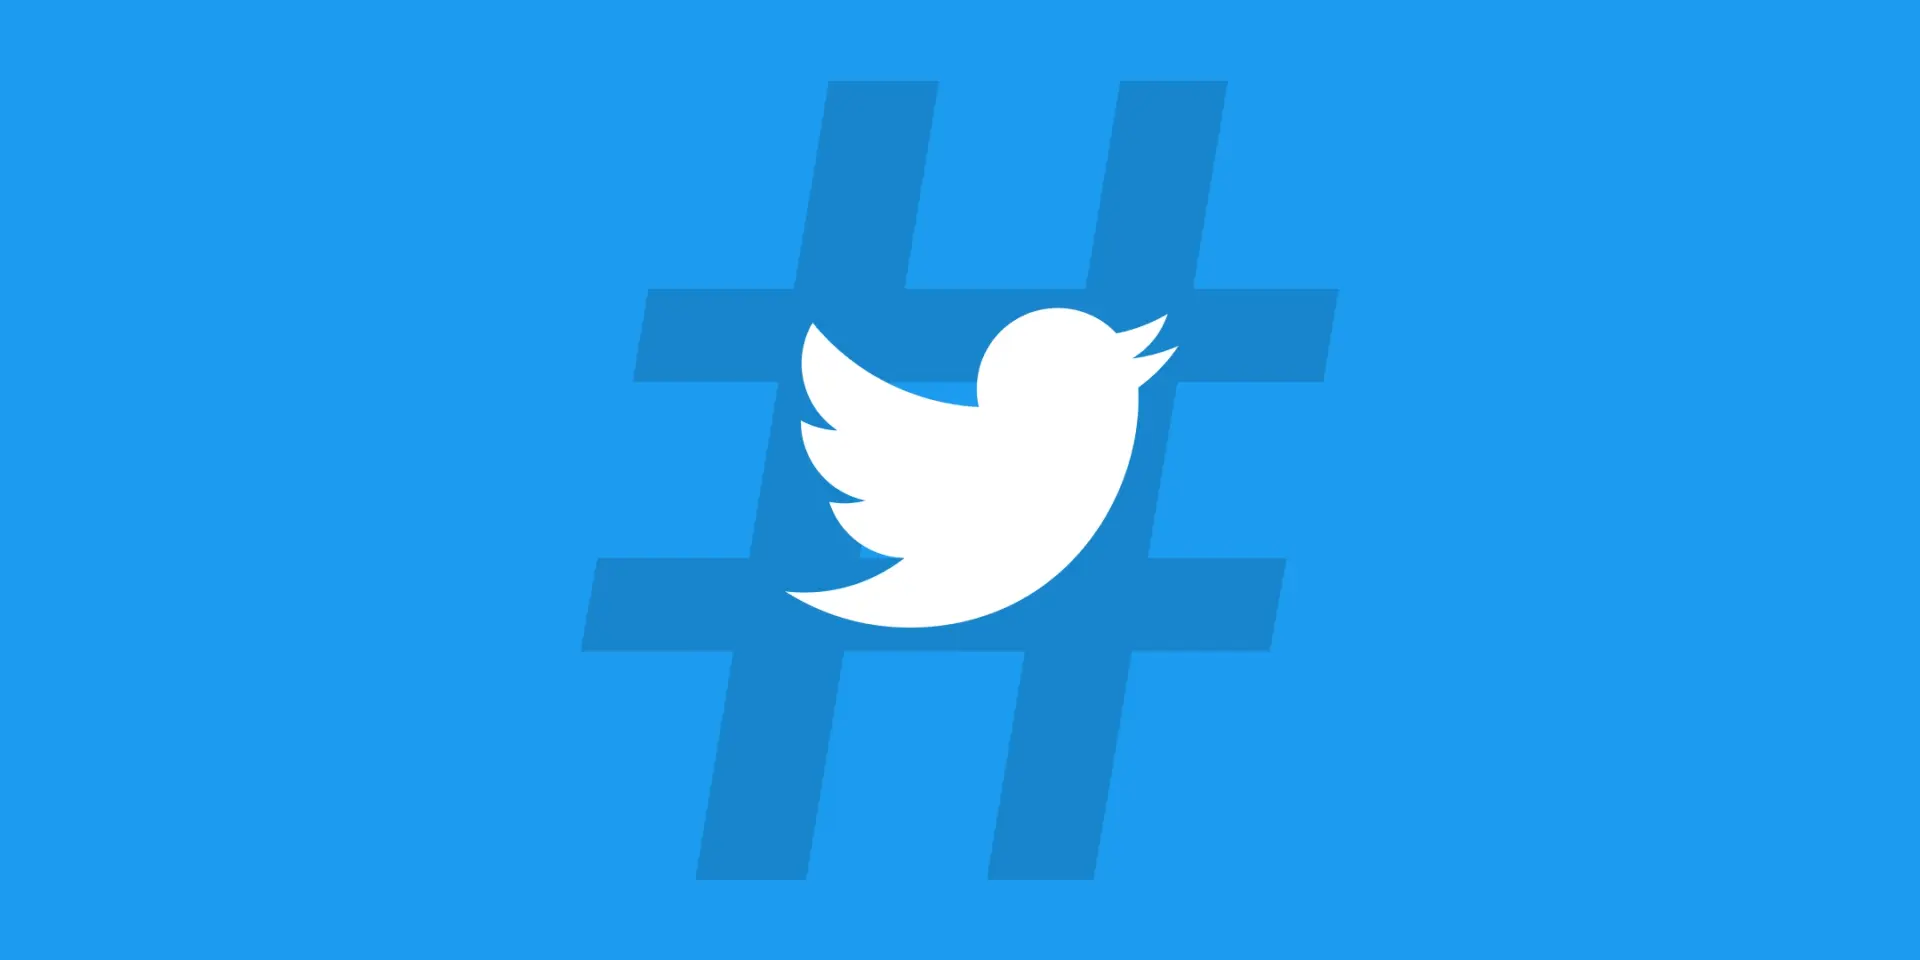 logo twitter avec un hashtag